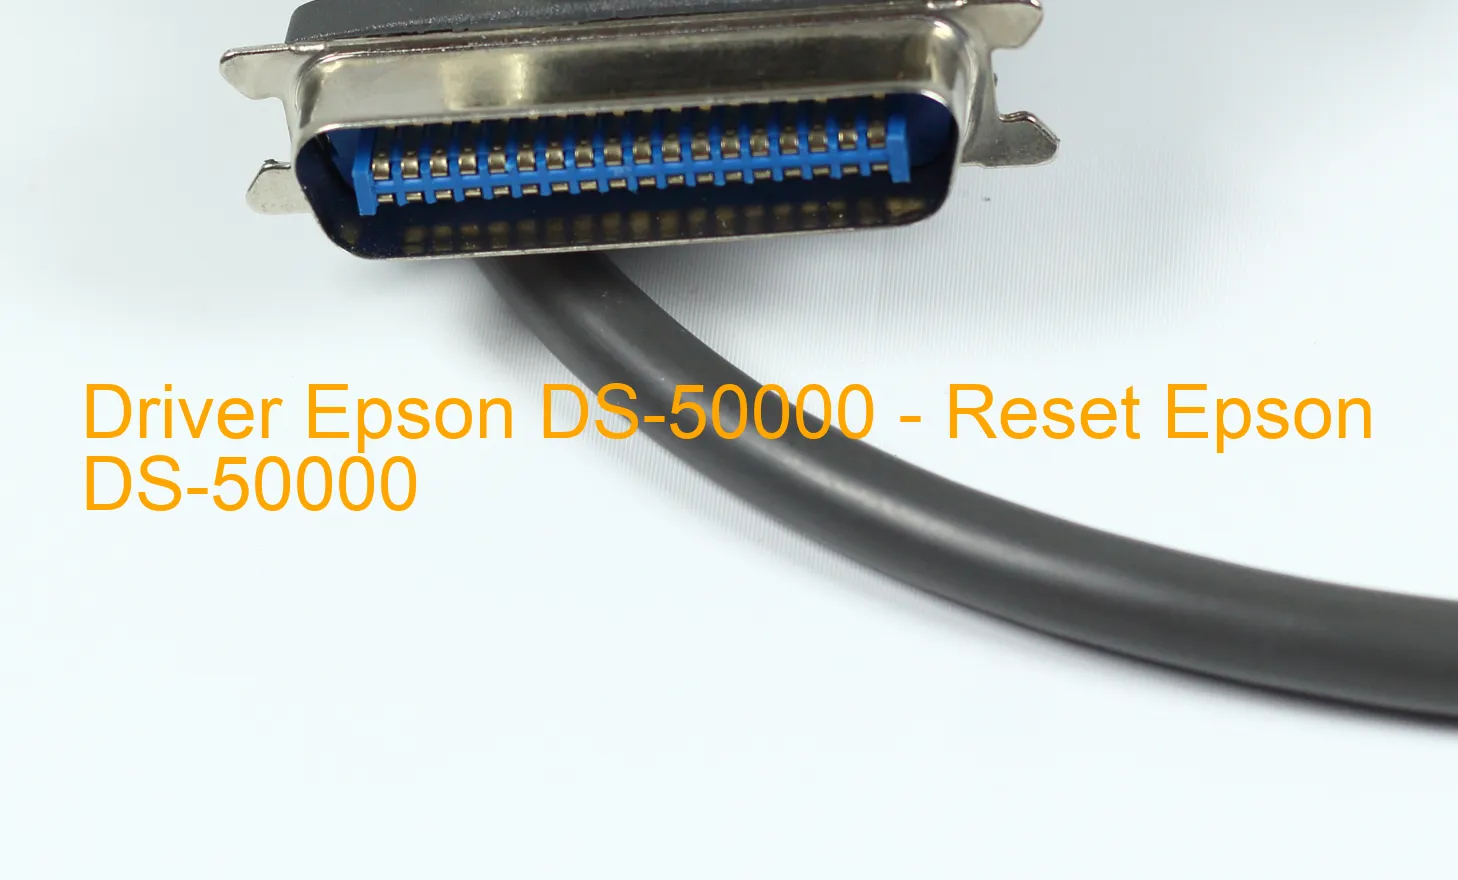 Epson DS-50000のドライバー、Epson DS-50000のリセットソフトウェア